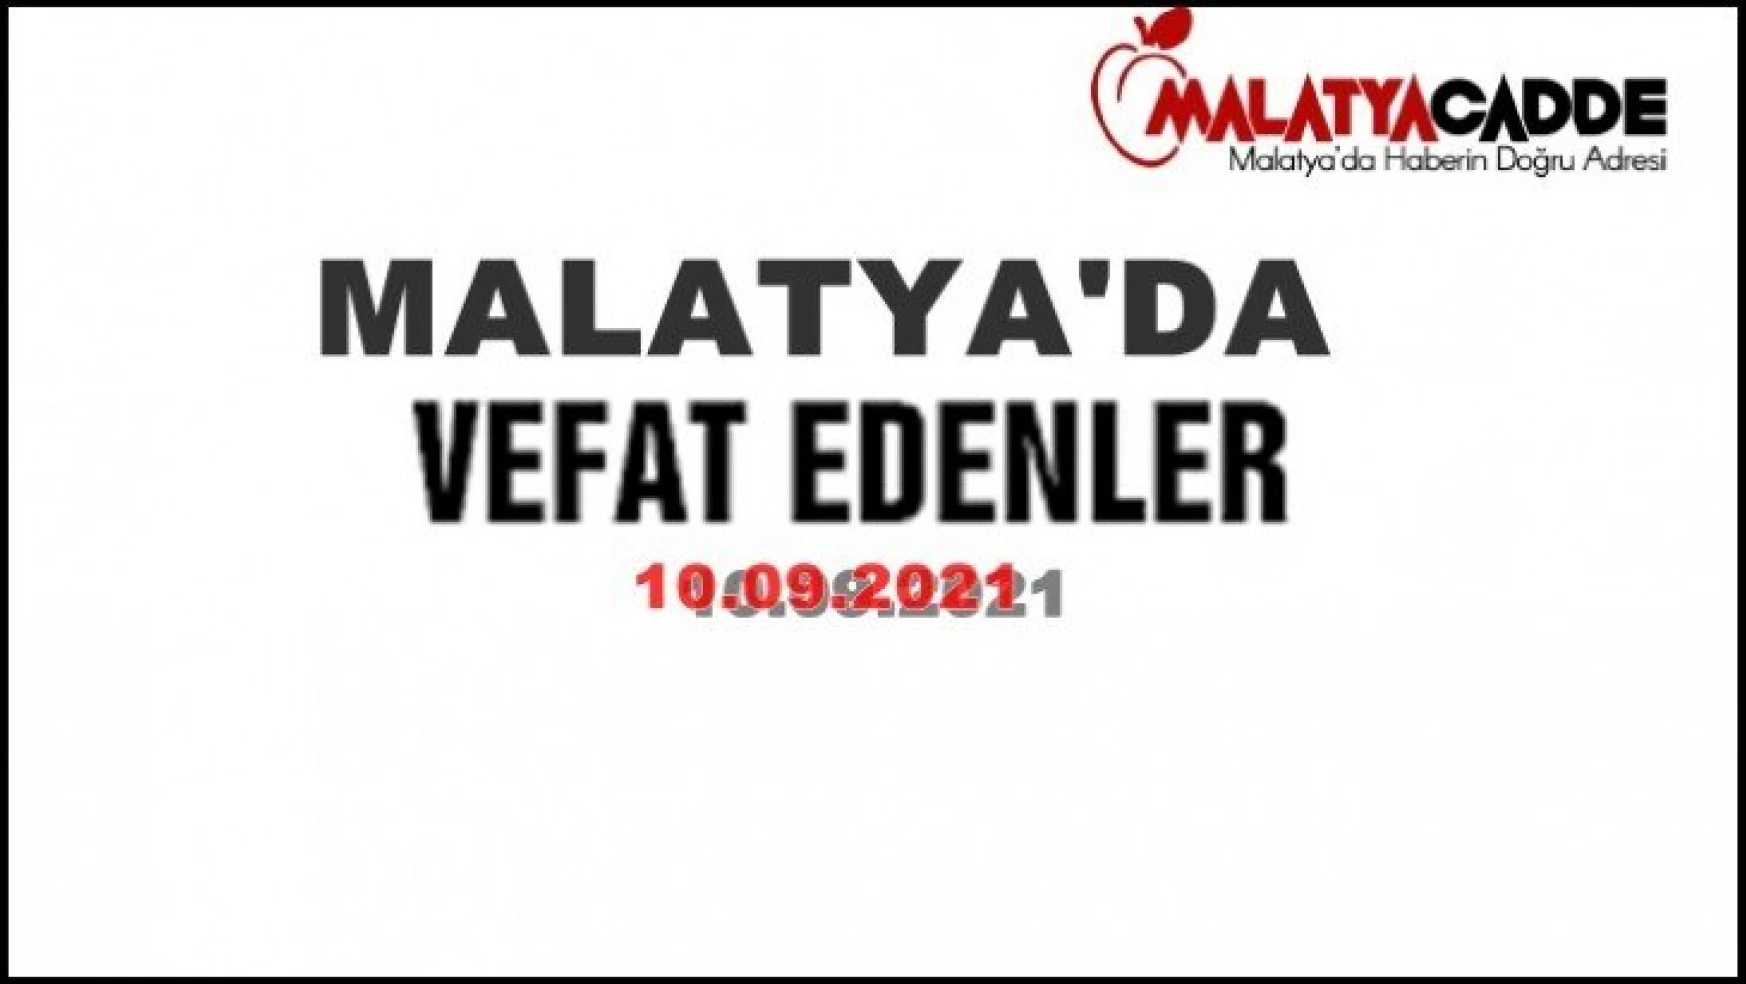 Malatya'da Bugün 11 Kişi Vefat etti.